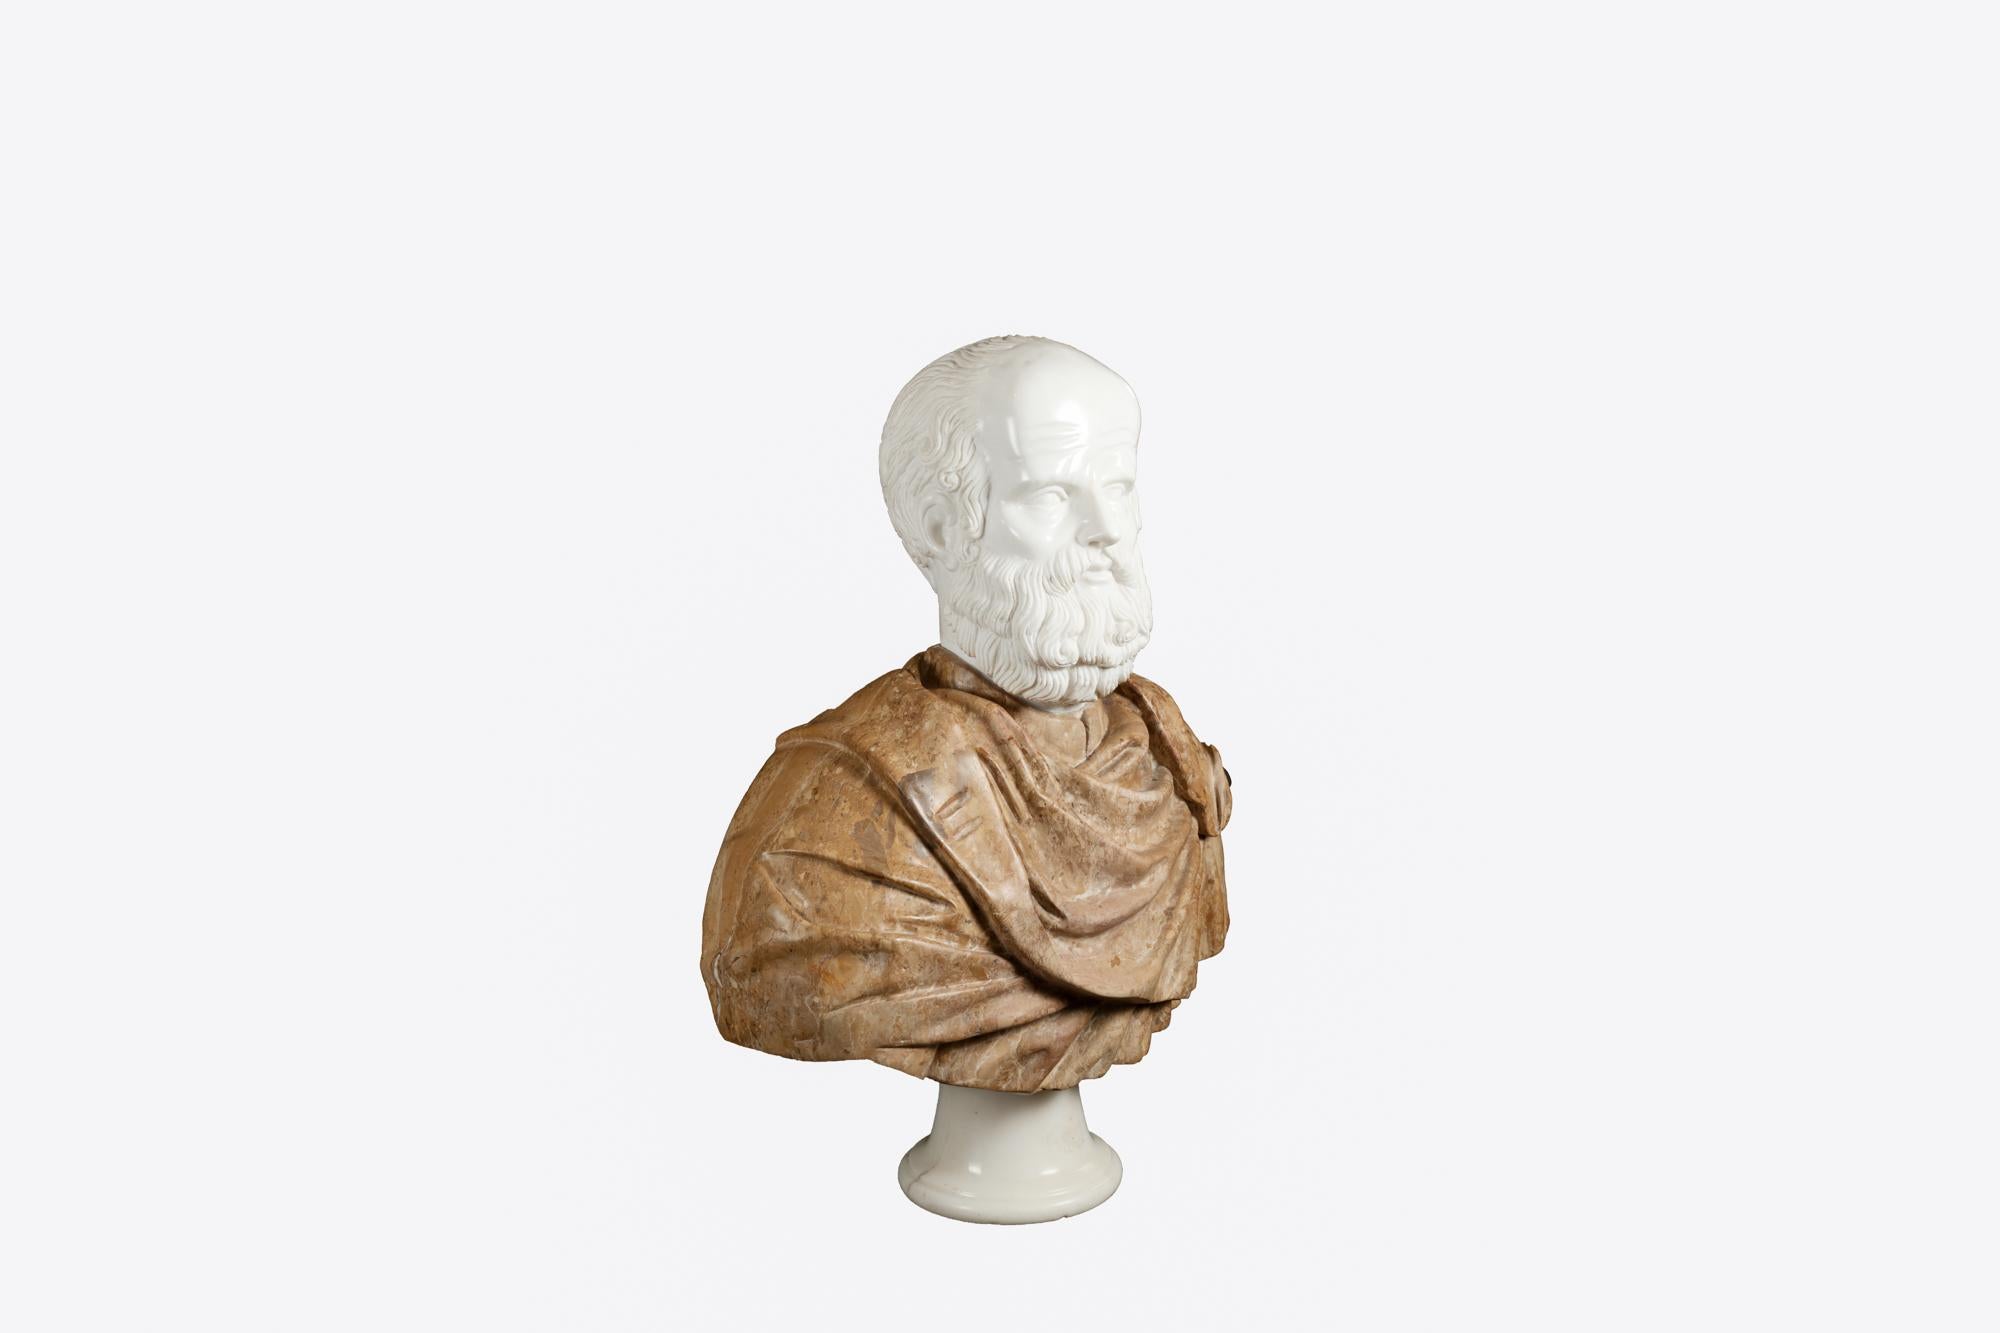 Italienische Marmorbüste aus dem 19. Jahrhundert des klassischen griechischen Philosophen Sokrates. Sein drapiertes Gewand ist aus rotem Scagliola handgeschnitzt, das Gesicht ist in kontrastierendem weißen Carrara-Marmor modelliert. Das Stück steht